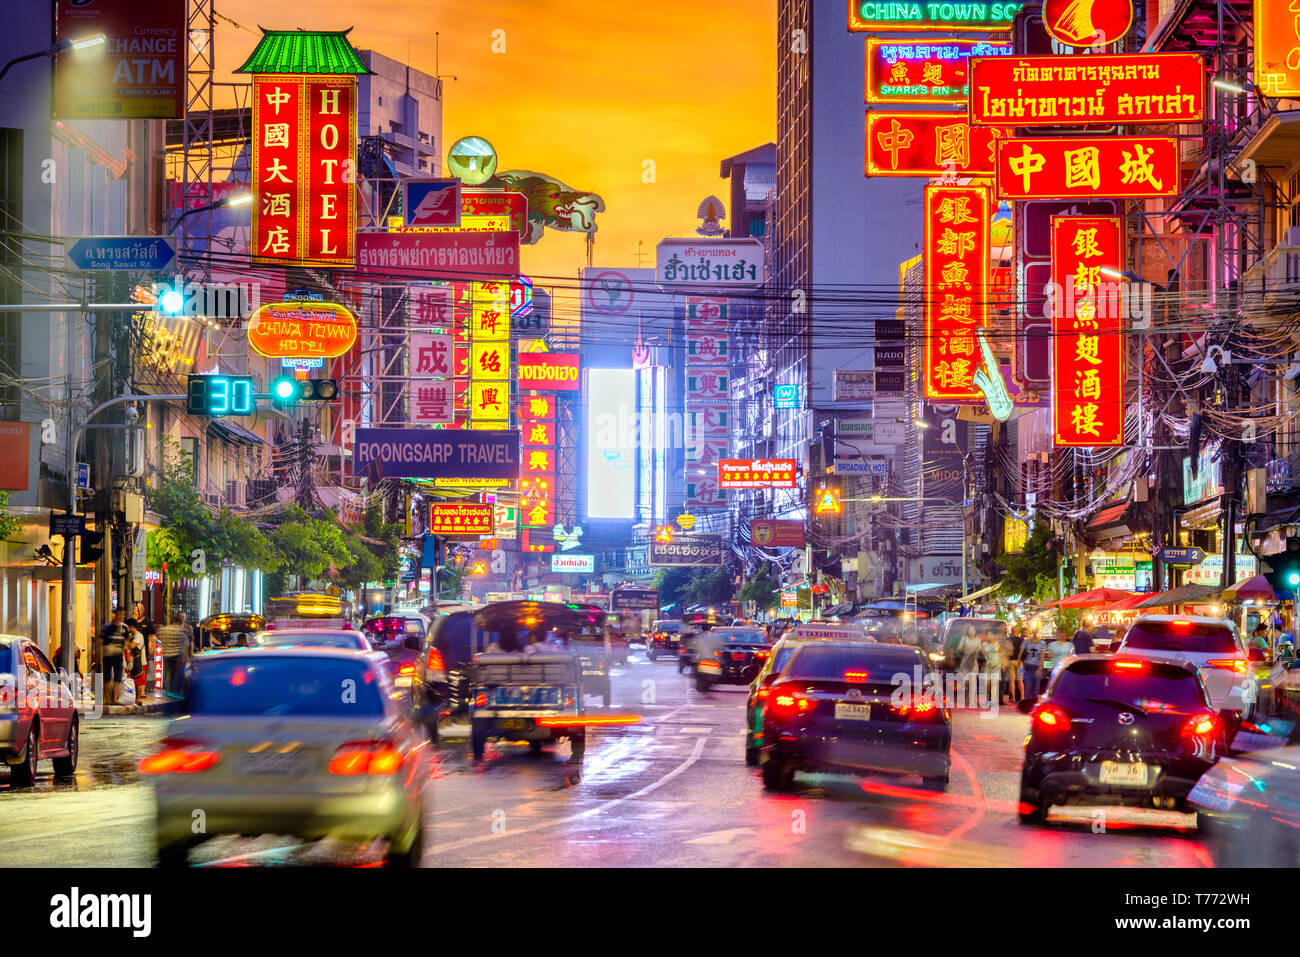 BANGKOK, THAÏLANDE - 27 septembre 2015 : Le trafic sur Yaowarat Road passe sous allumé des signes dans le quartier chinois au crépuscule. Banque D'Images